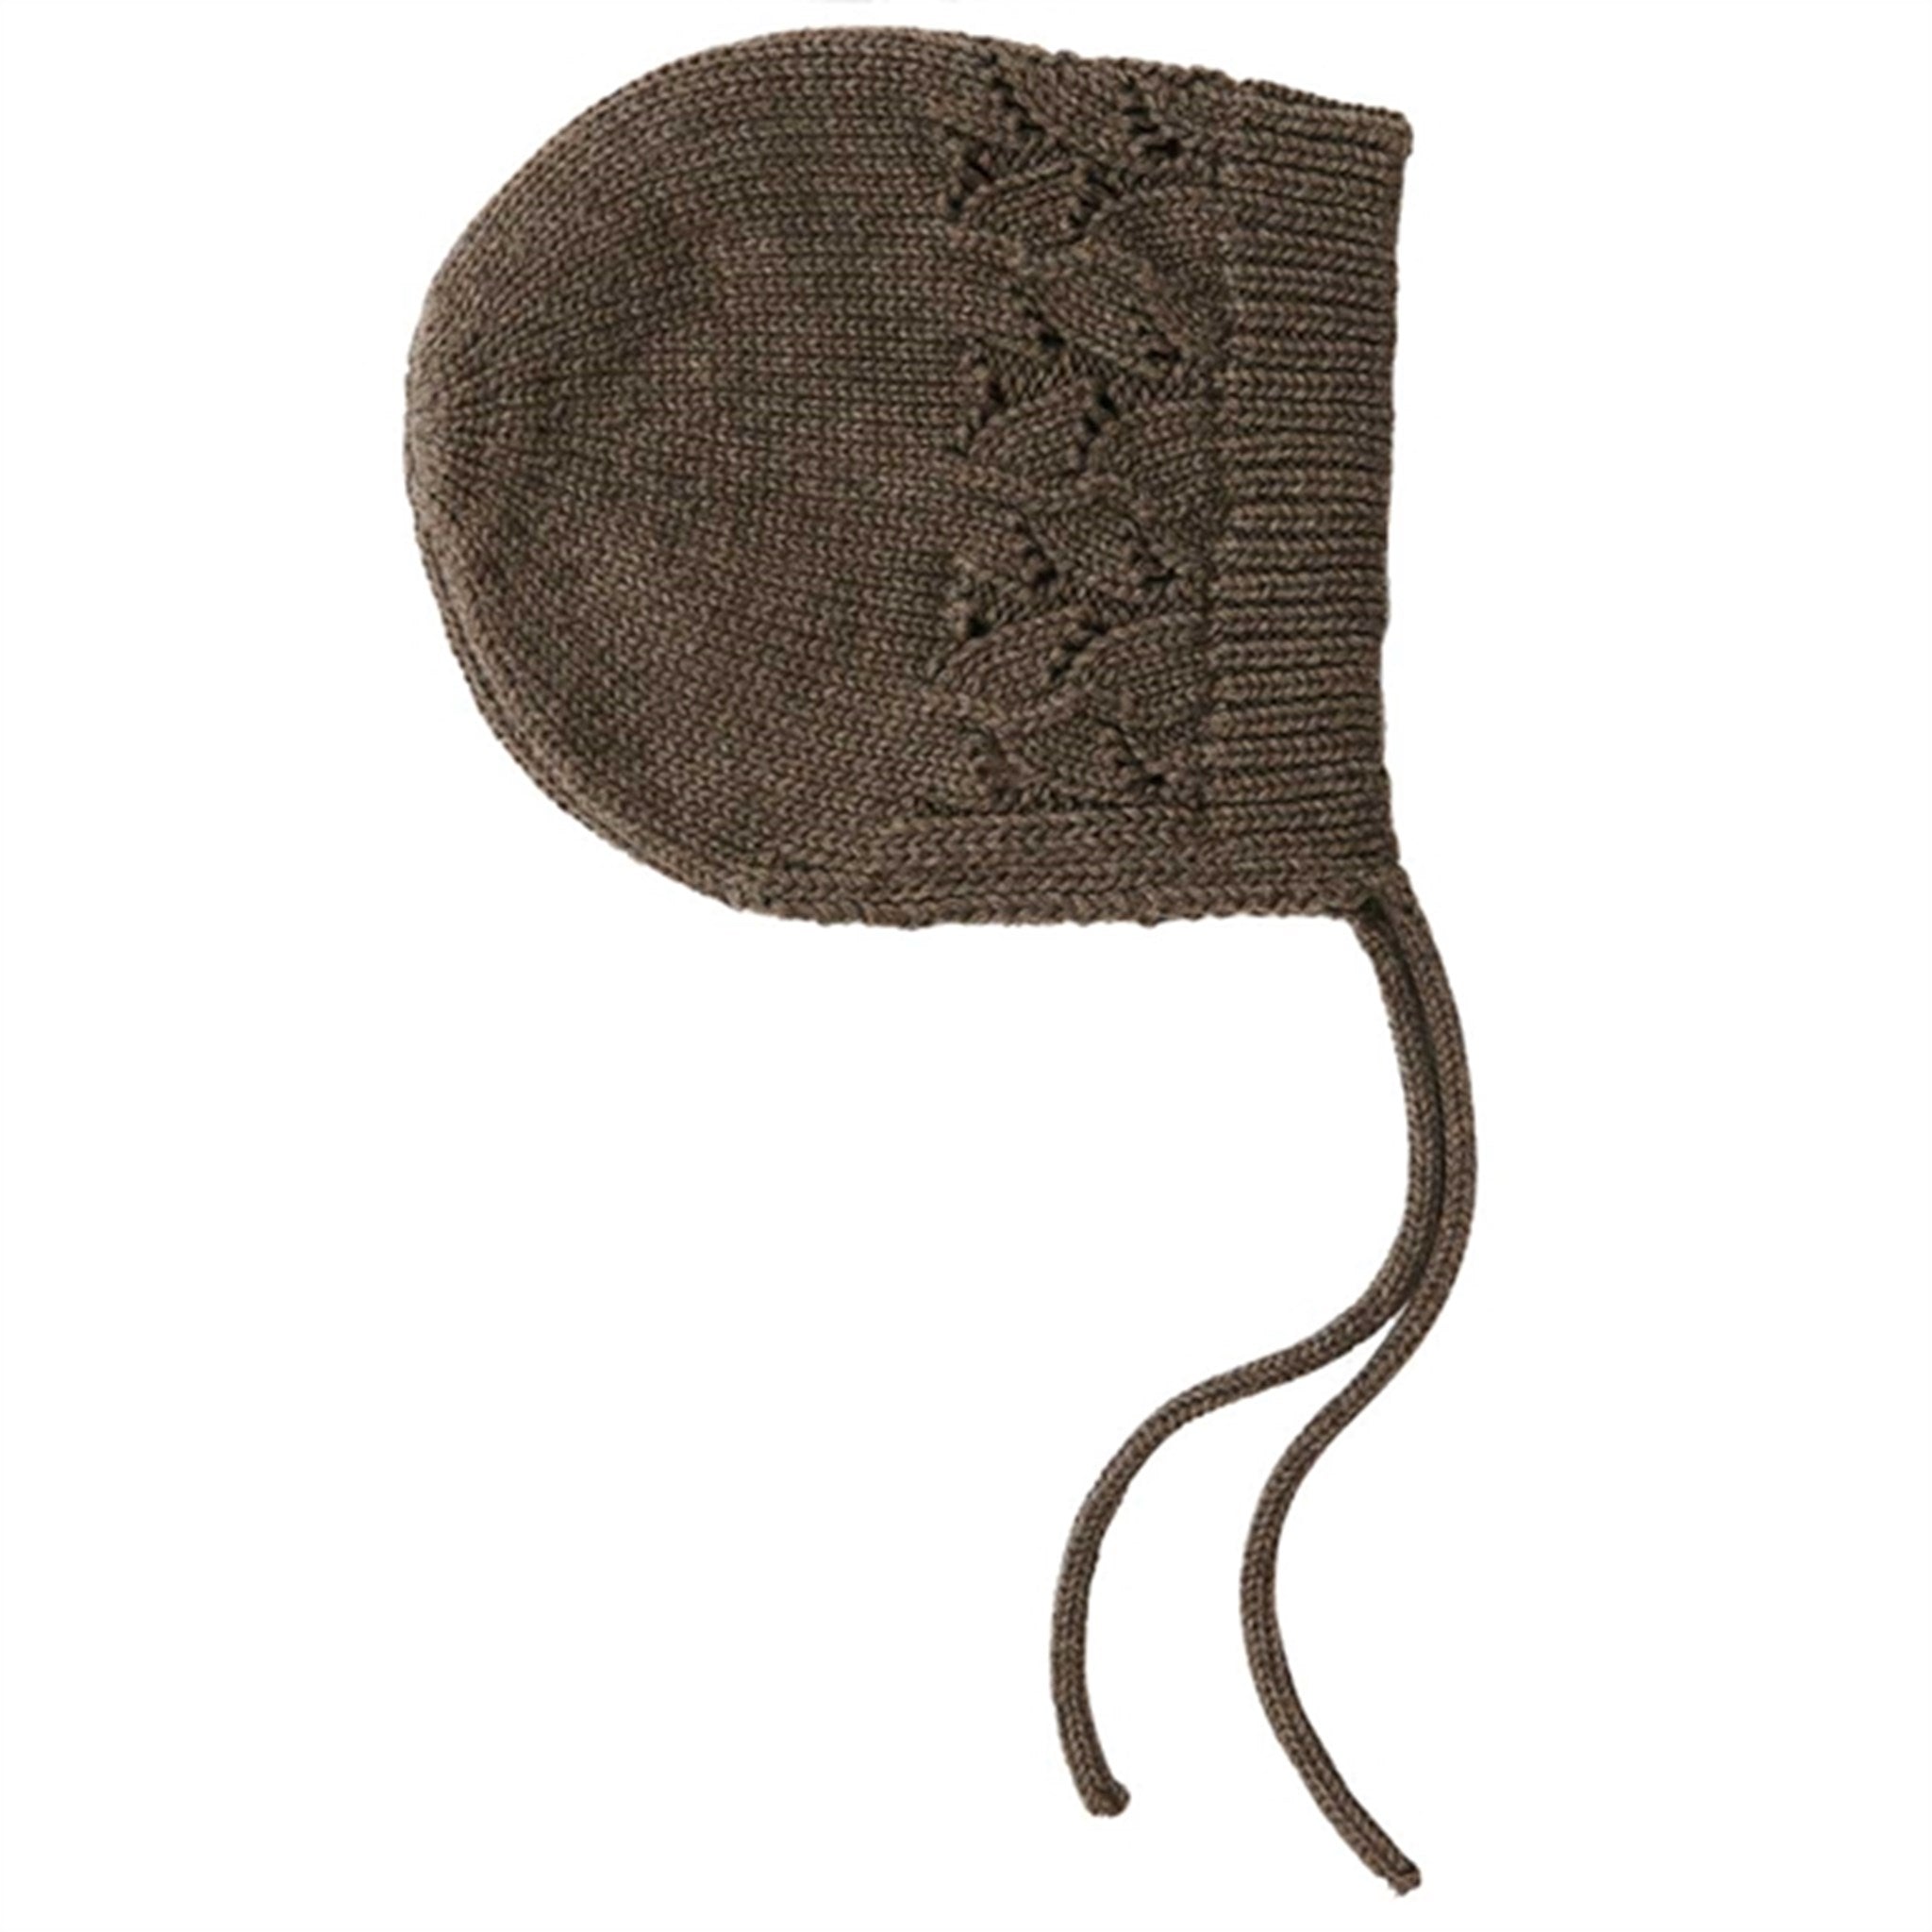 That's Mine Earth Brown Melange Bonette Pointelle Knit Hat